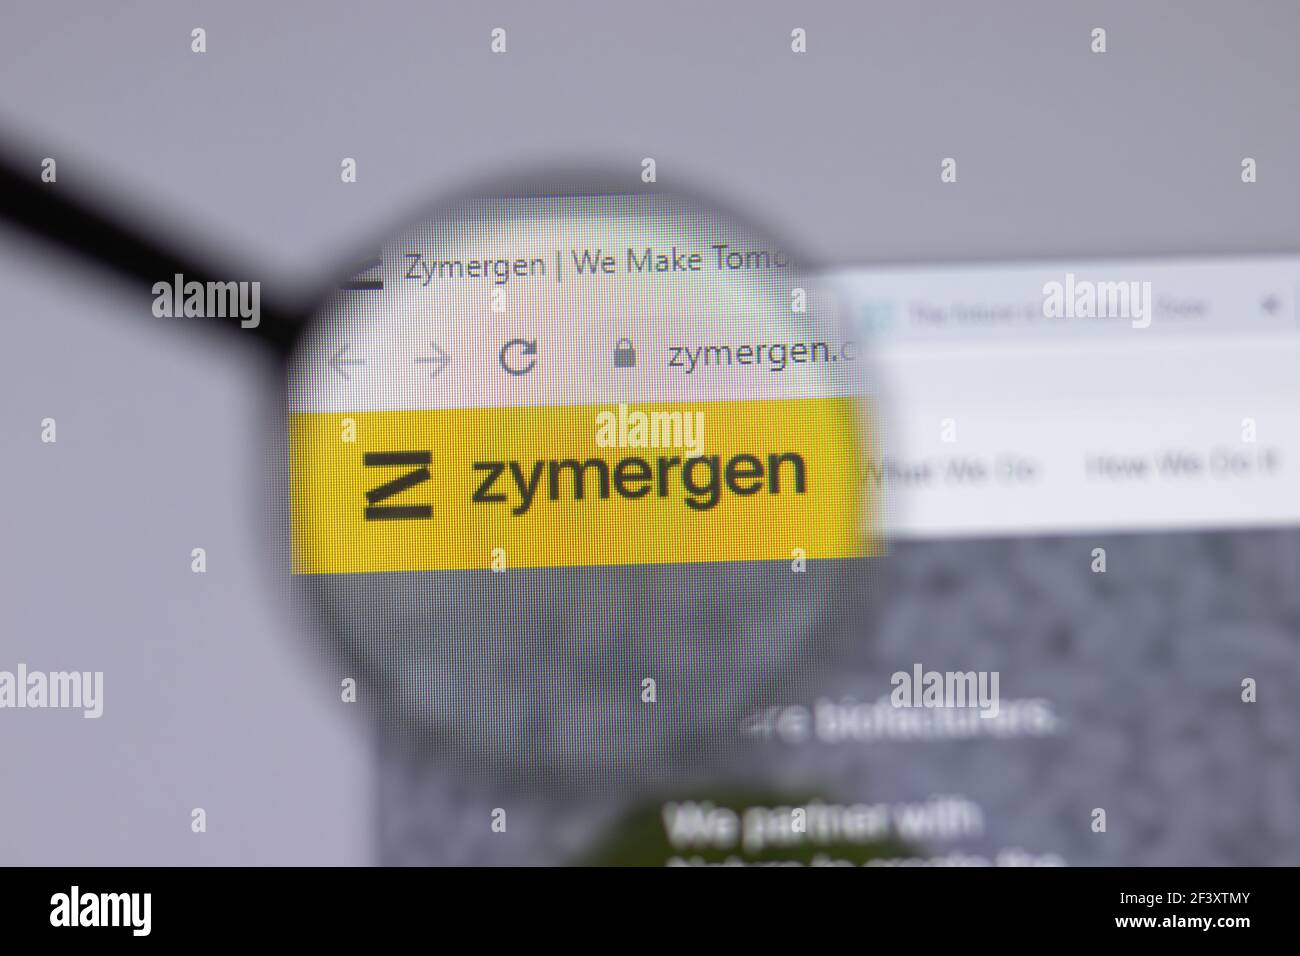 New York, USA - 18 Marzo 2021: Icona del logo della società Zymergen sul sito web, Editoriale illustrativo Foto Stock